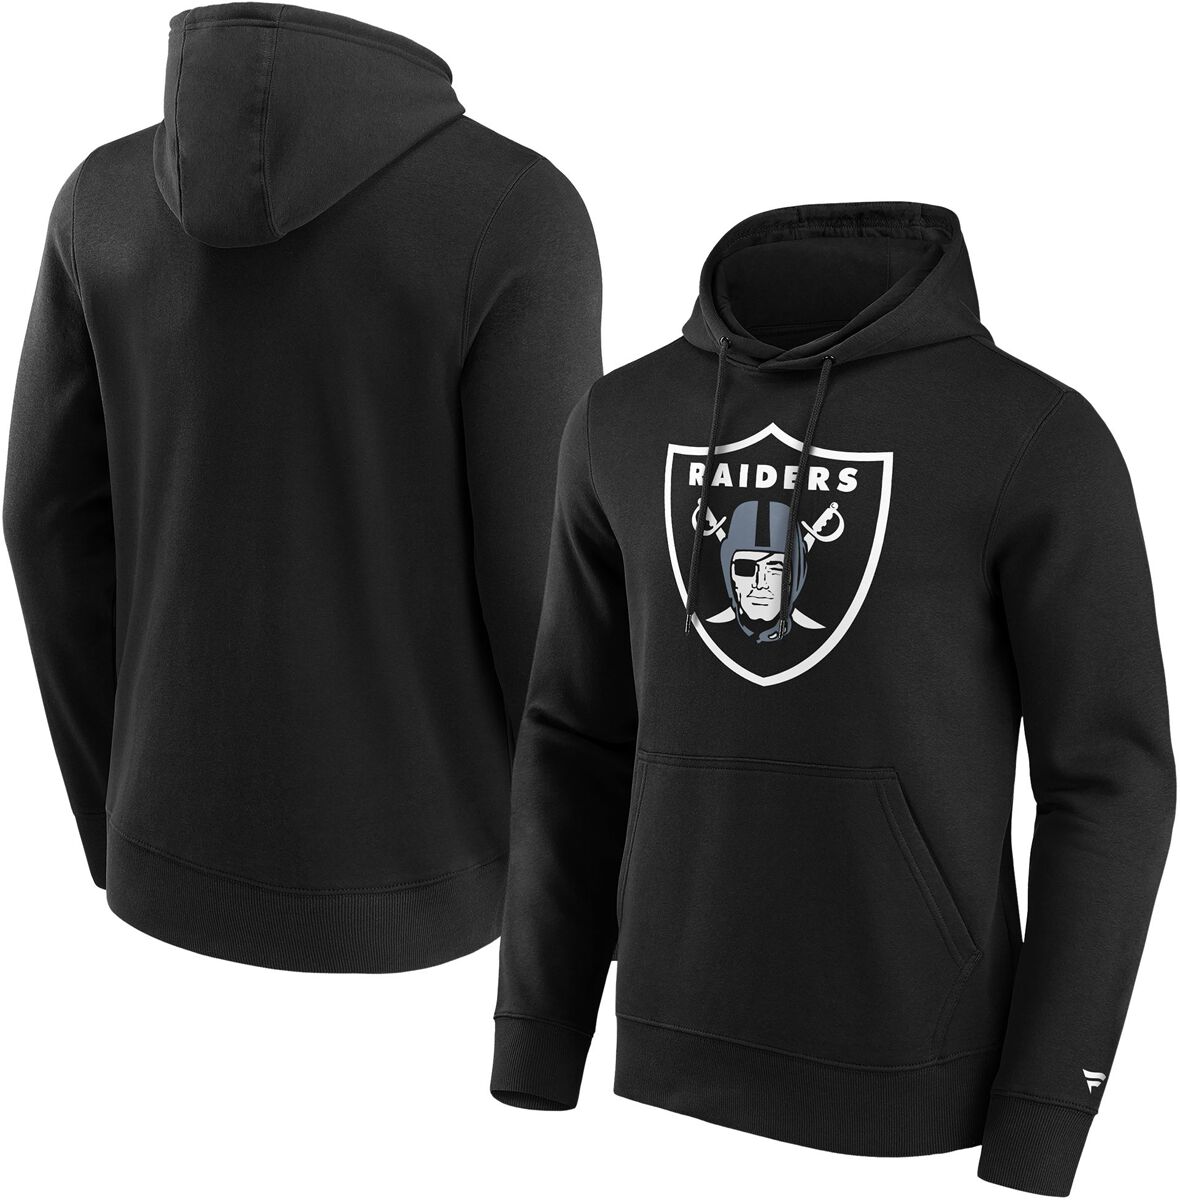 Fanatics Kapuzenpullover - Las Vegas Raiders Logo - S bis L - für Männer - Größe M - schwarz